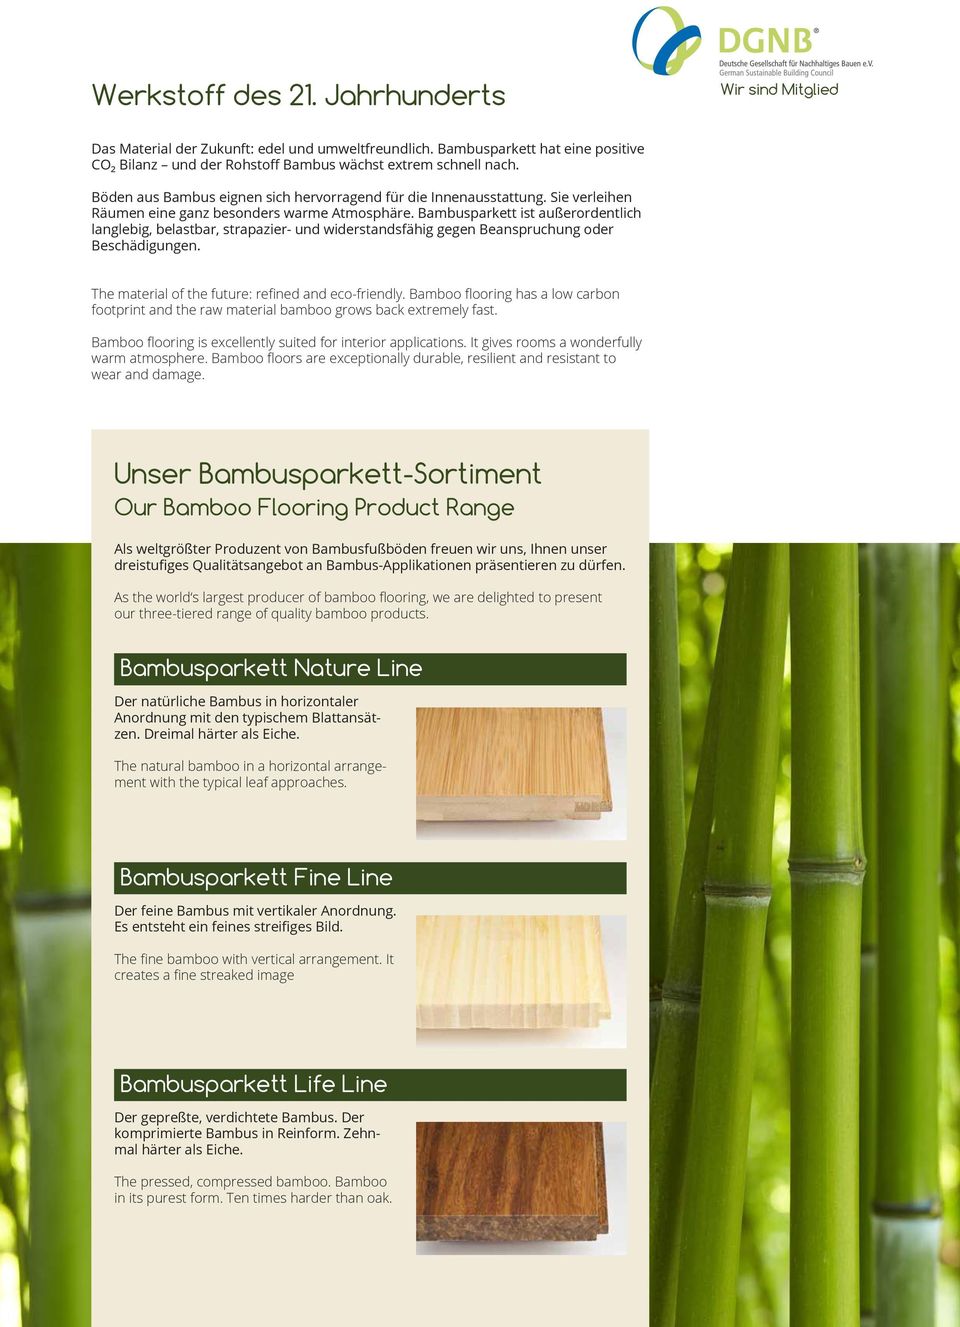 Bambusparkett ist außerordentlich langlebig, belastbar, strapazier- und widerstandsfähig gegen Beanspruchung oder Beschädigungen. The material of the future: refined and eco-friendly.